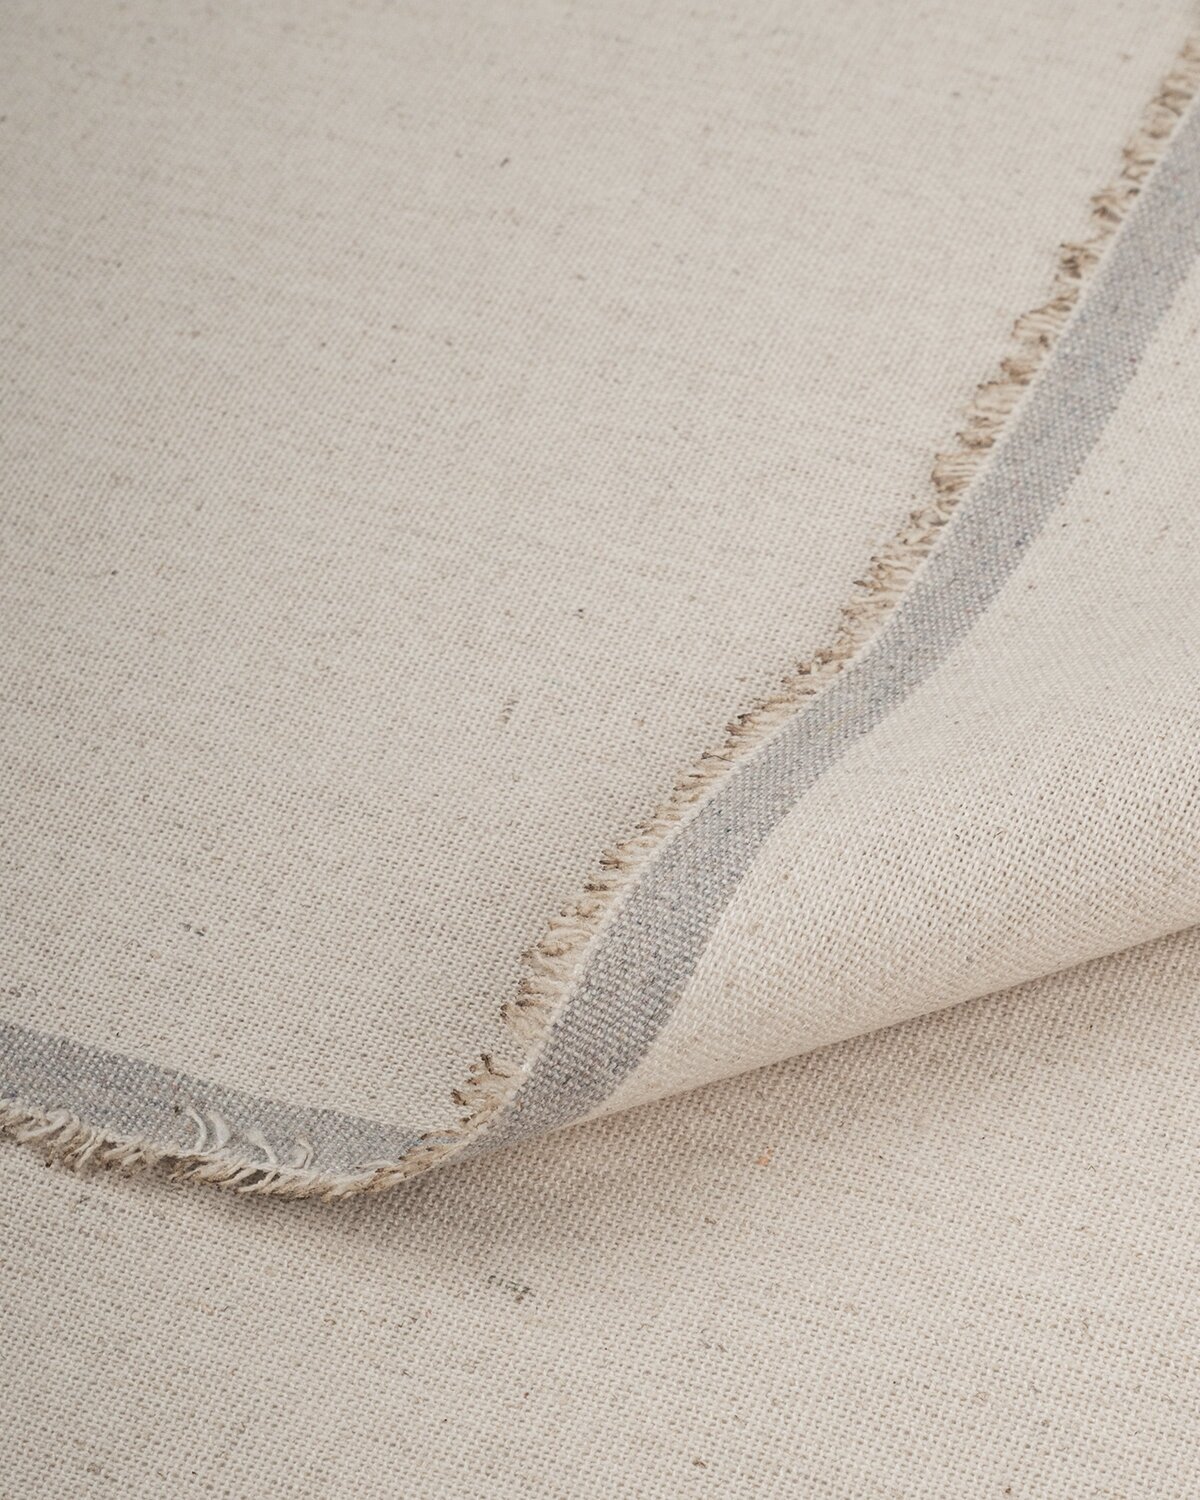 Ткань для шитья и рукоделия Лен "Блури" 1 м * 137 см, бежевый 054